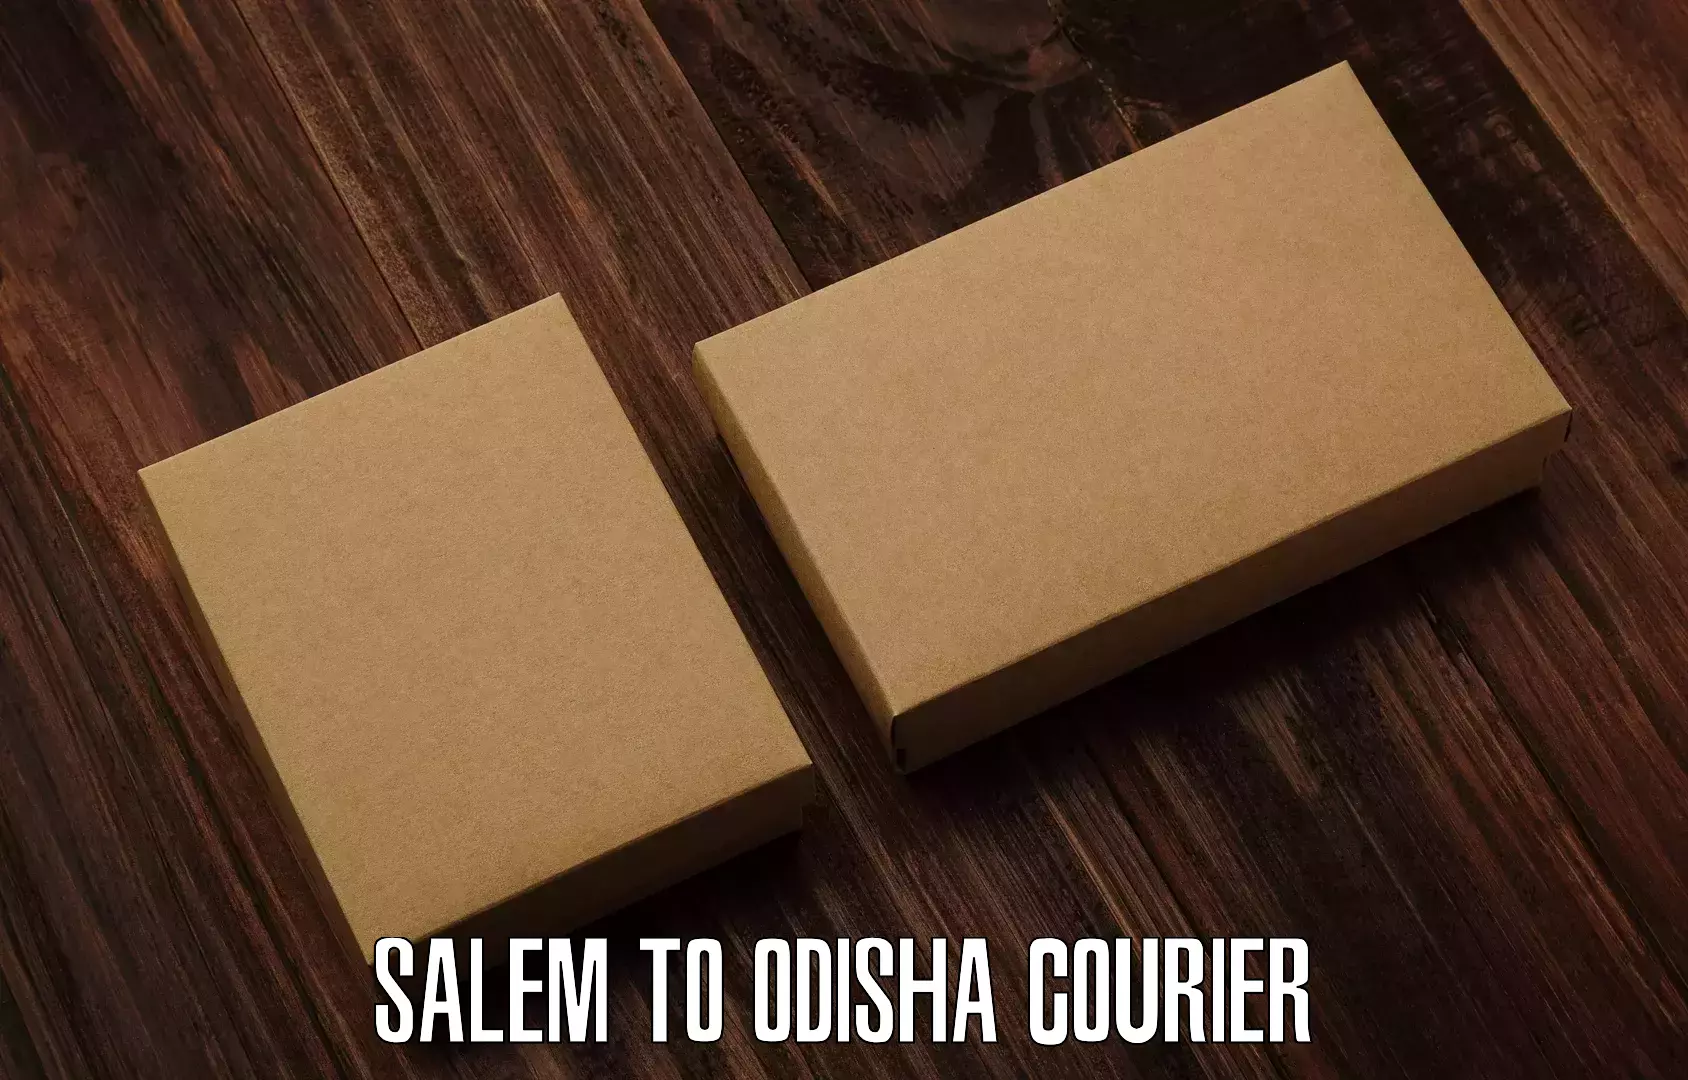 Affordable parcel service Salem to Kadobahal